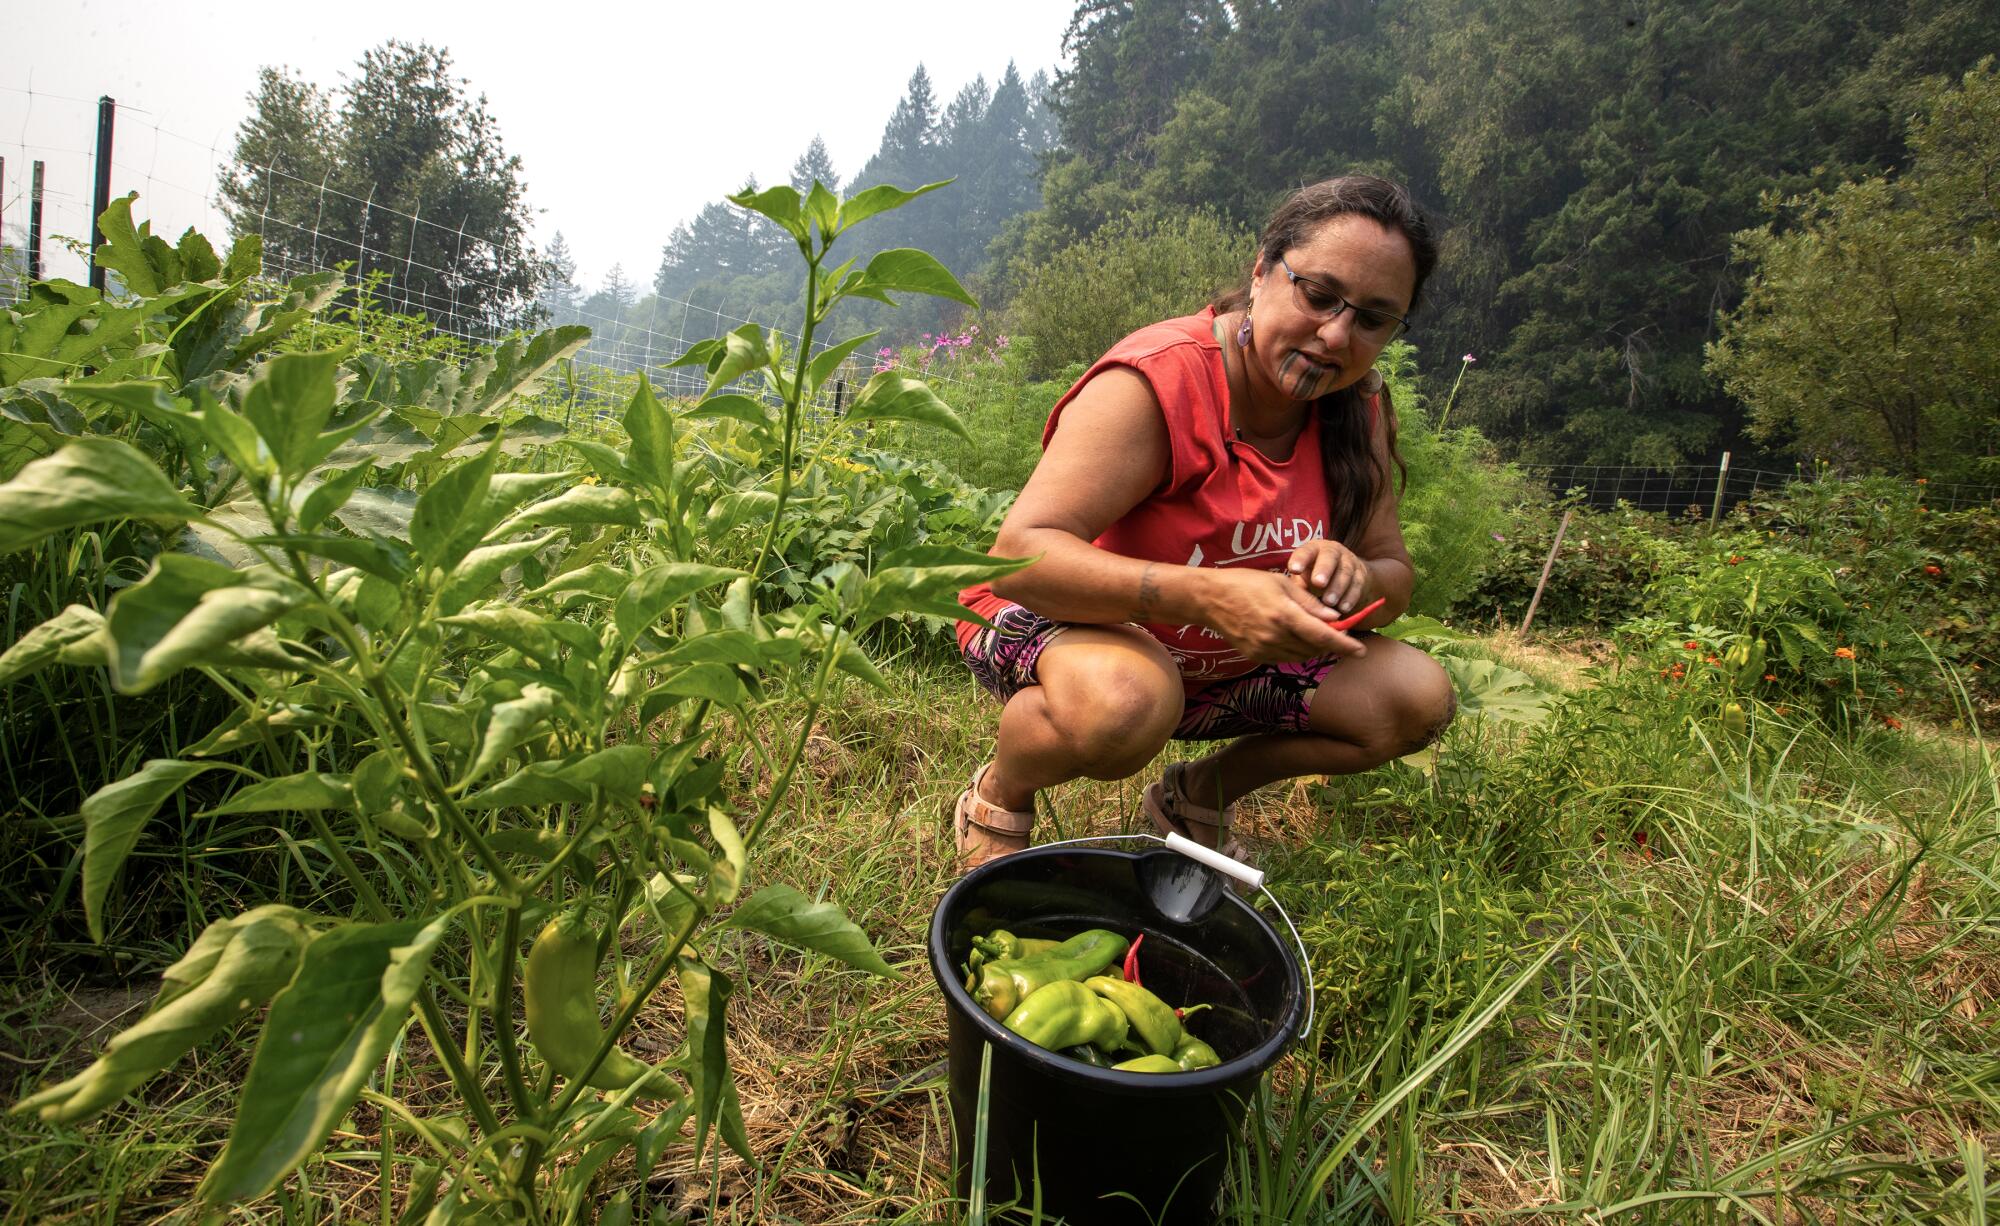 Annelia Hillman picks vegetables in a garden.